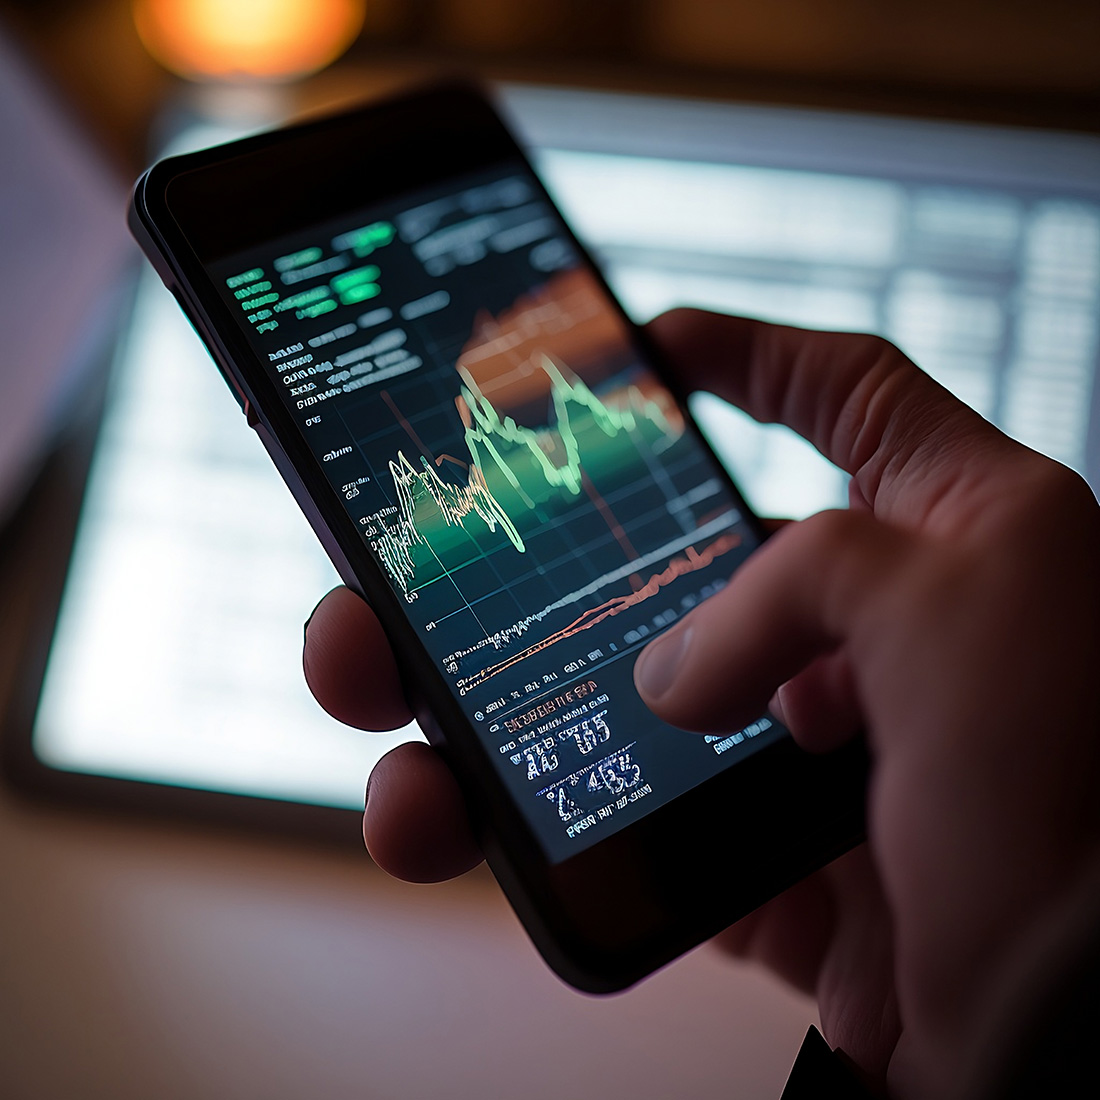 Das Bild zeigt eine Hand, die ein Smartphone hält, auf dessen Bildschirm Börsendiagramme und Finanzdaten zu sehen sind, was auf mobiles Trading oder das Überprüfen von Aktienkursen hindeutet.